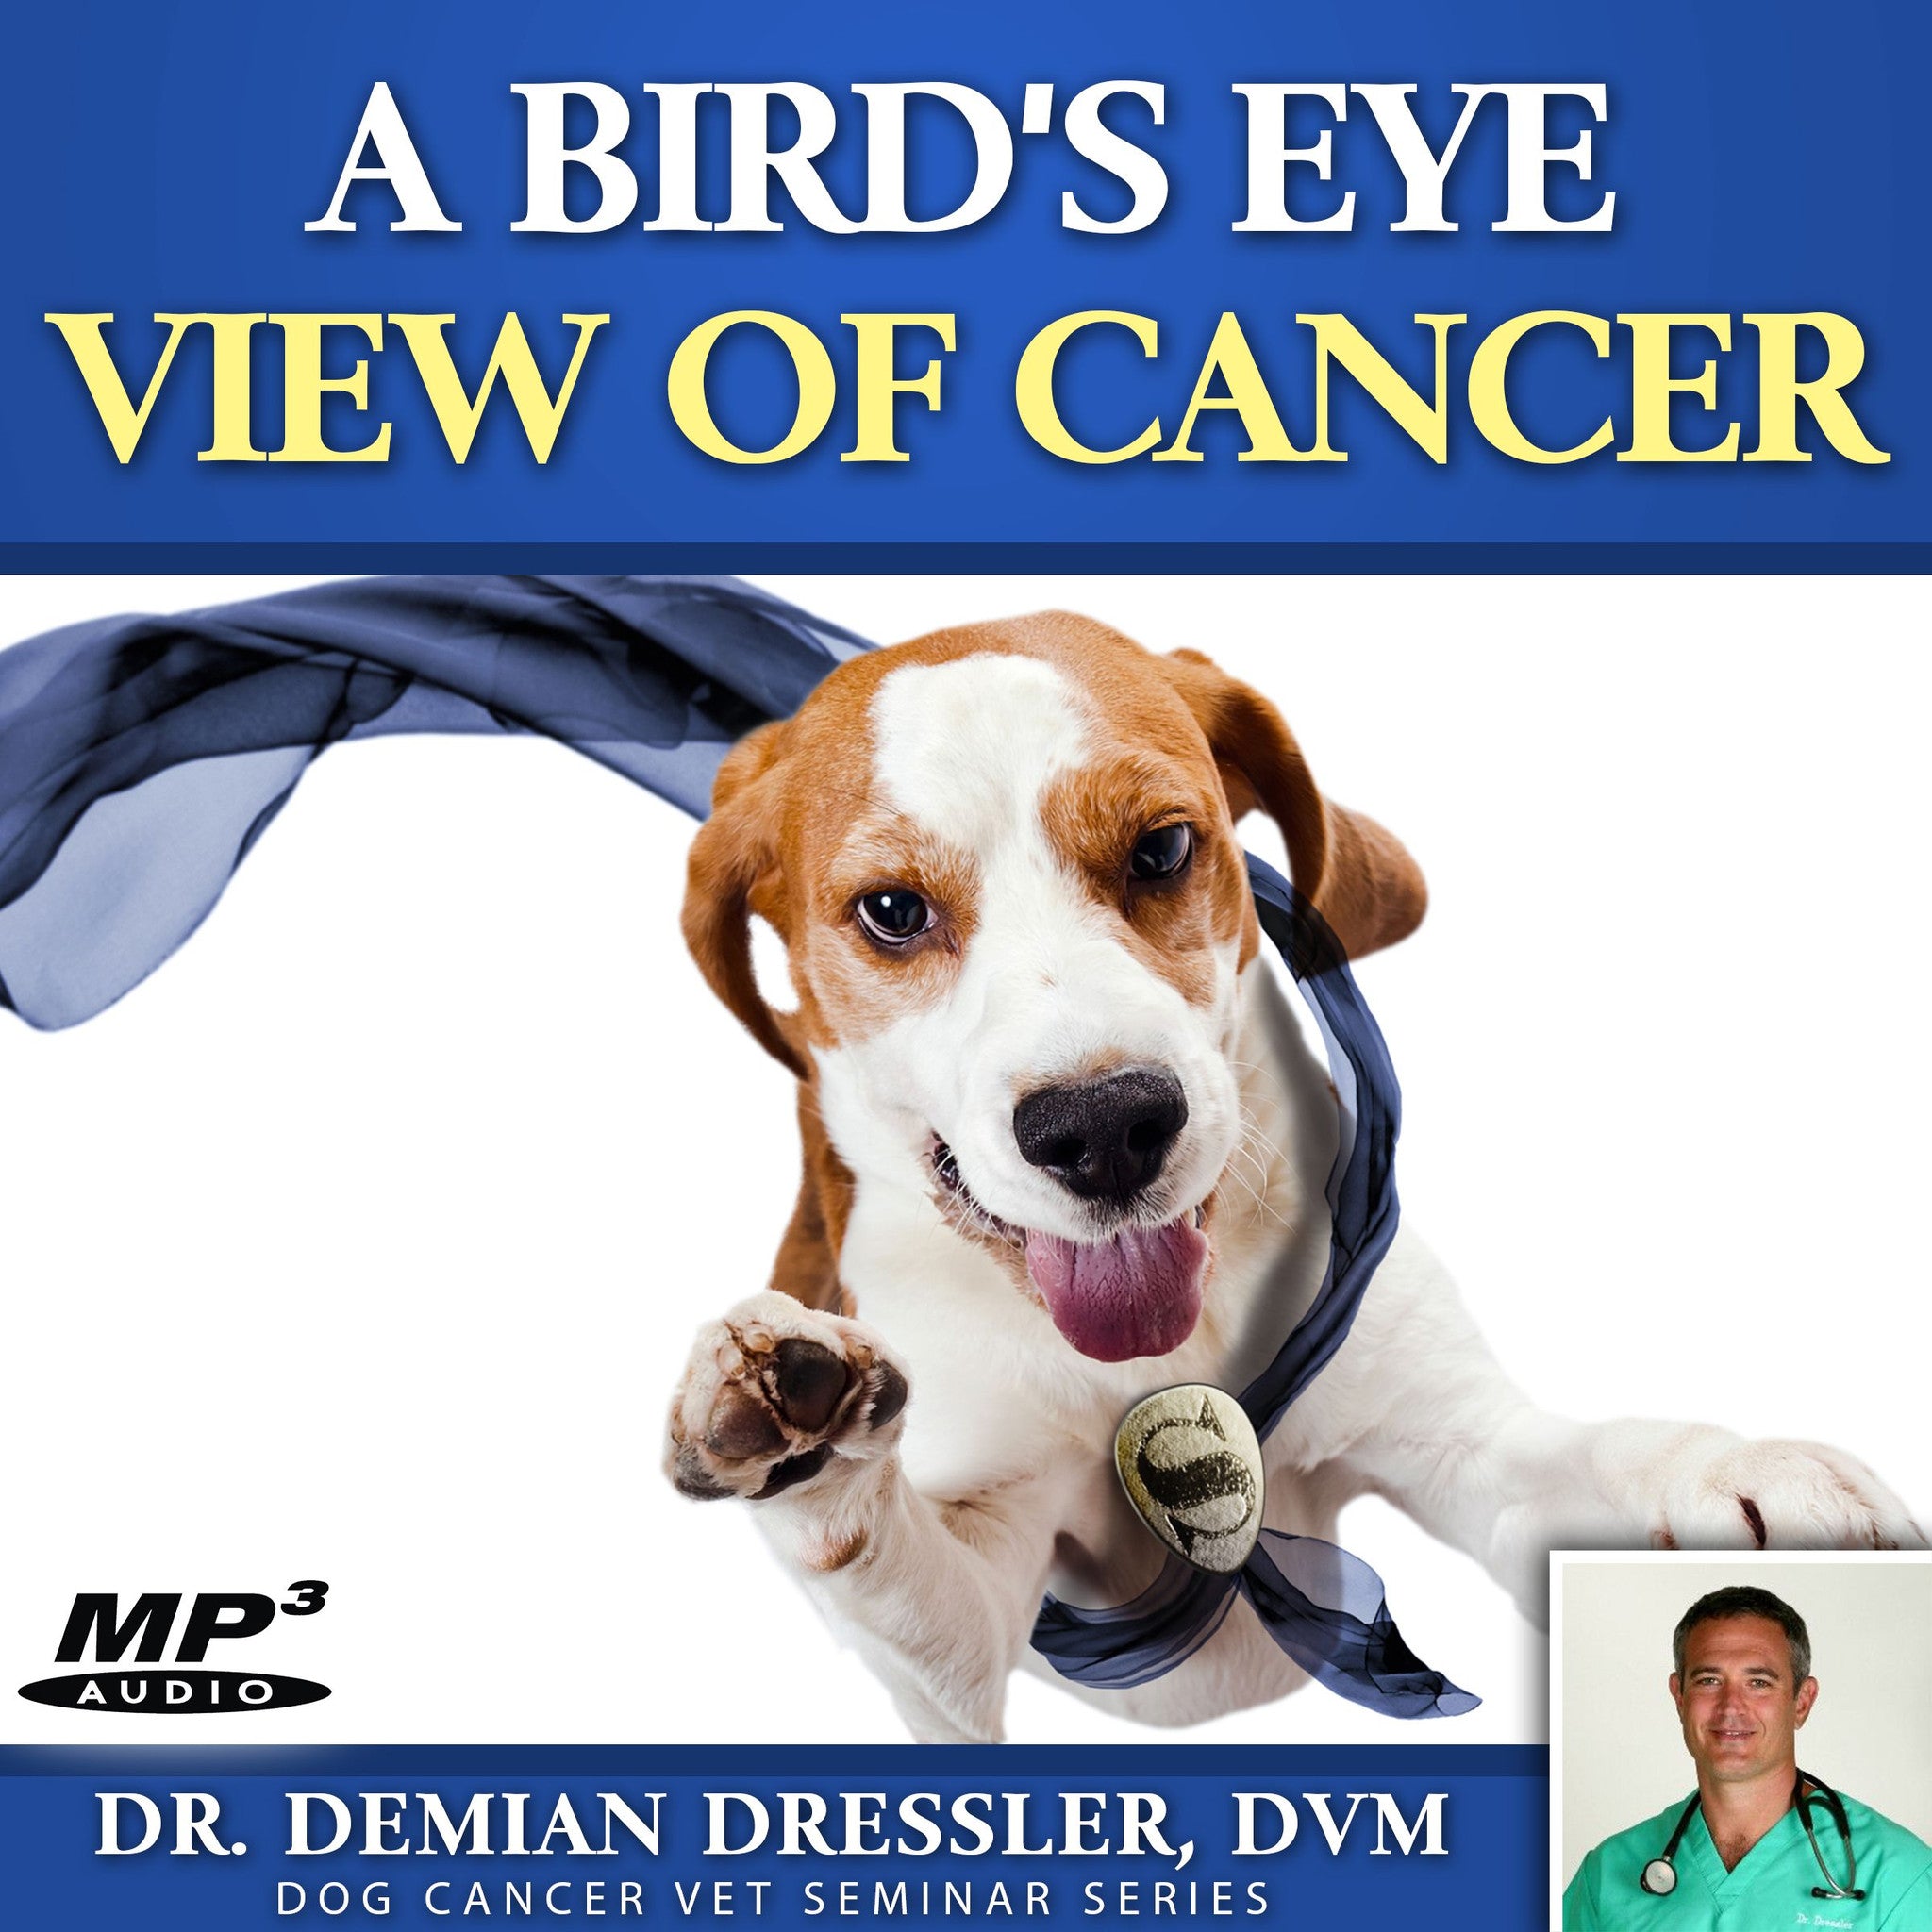 dr dressler dog cancer